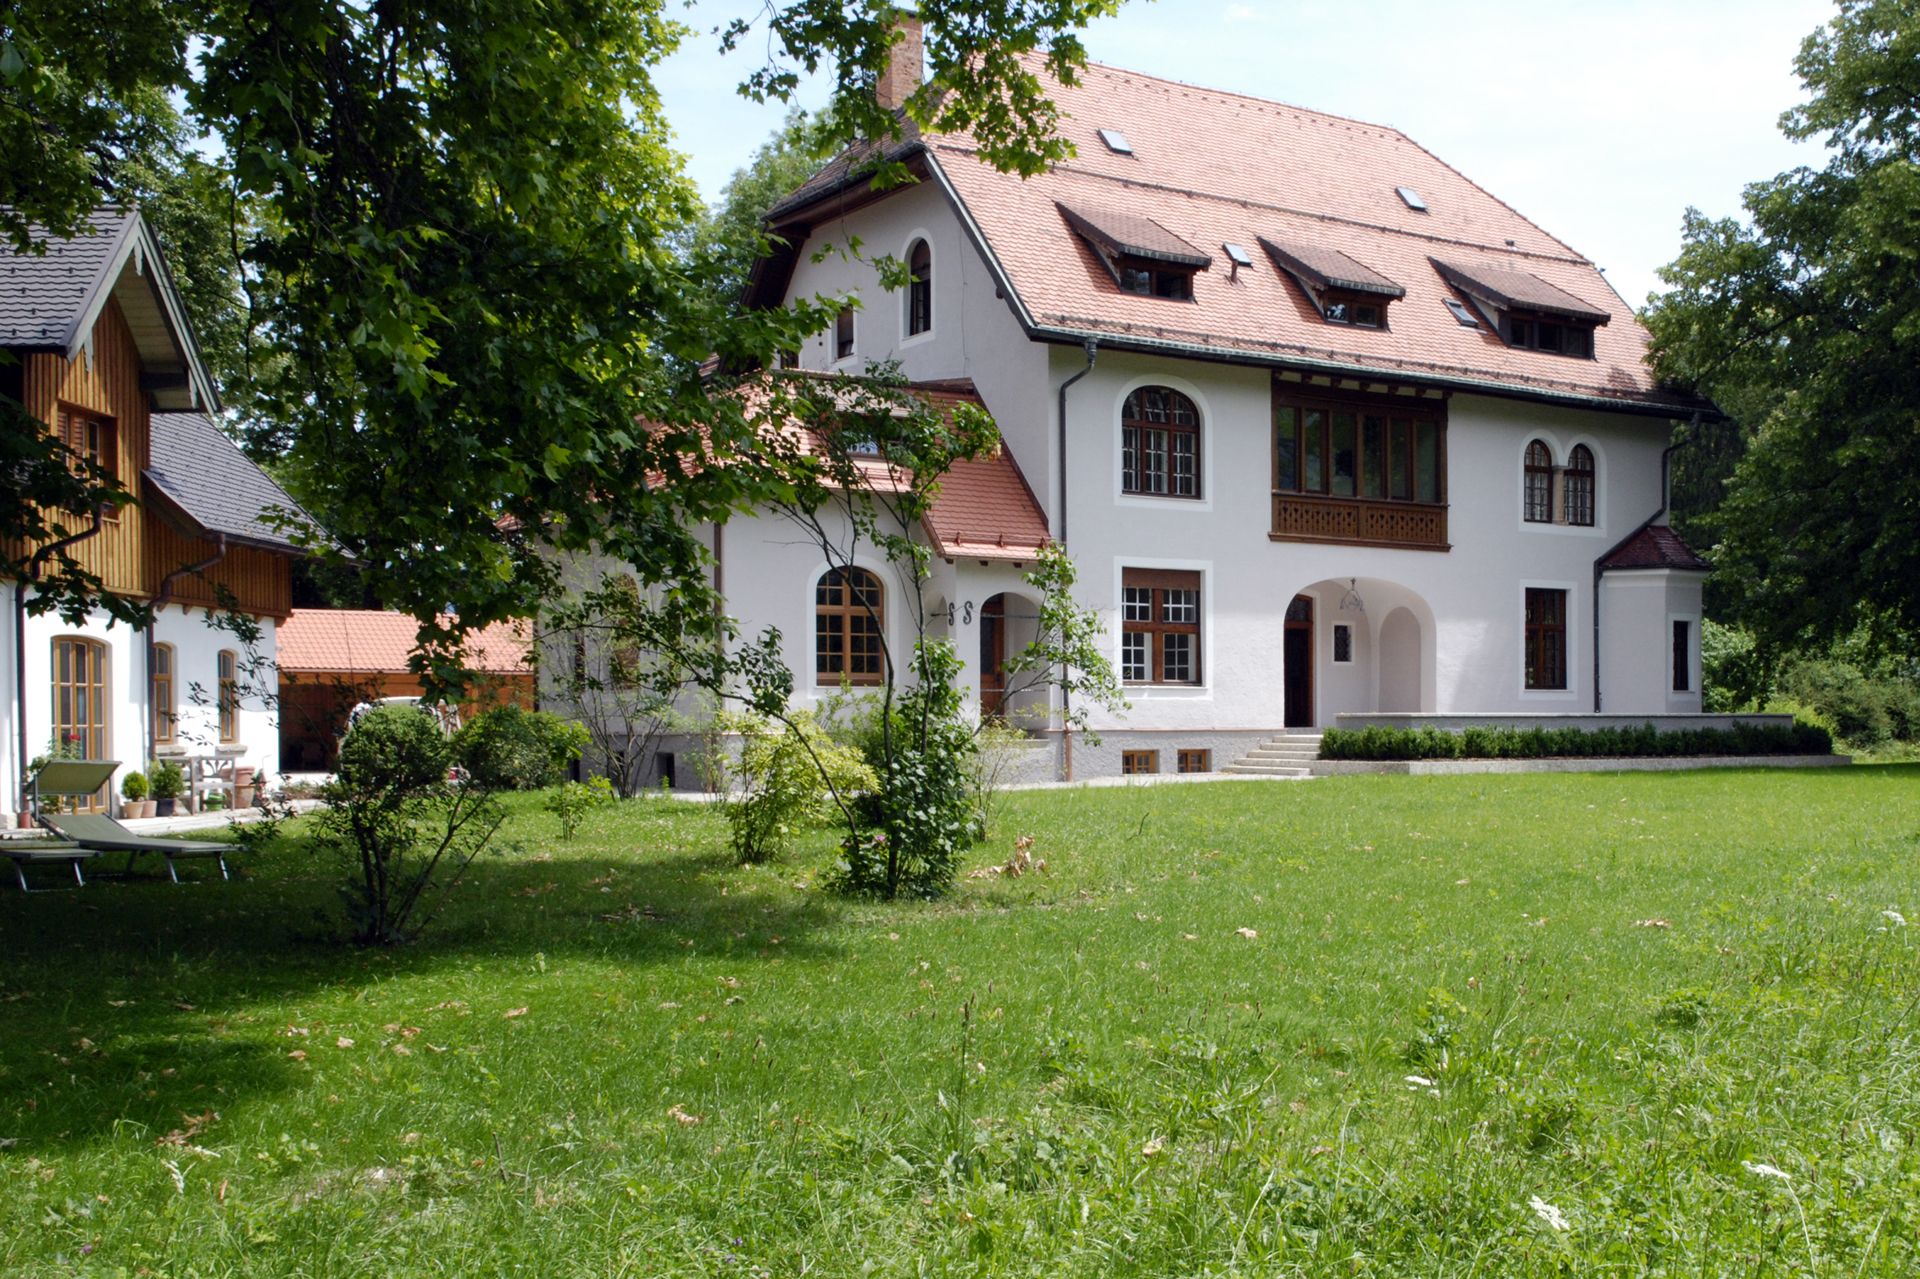 3-stöckige Villa mit hellgrauer Außenwand, Holz-Sprossenfenstern, rotem Giebeldach und angrenzender Rasenfläche und Baumbestand